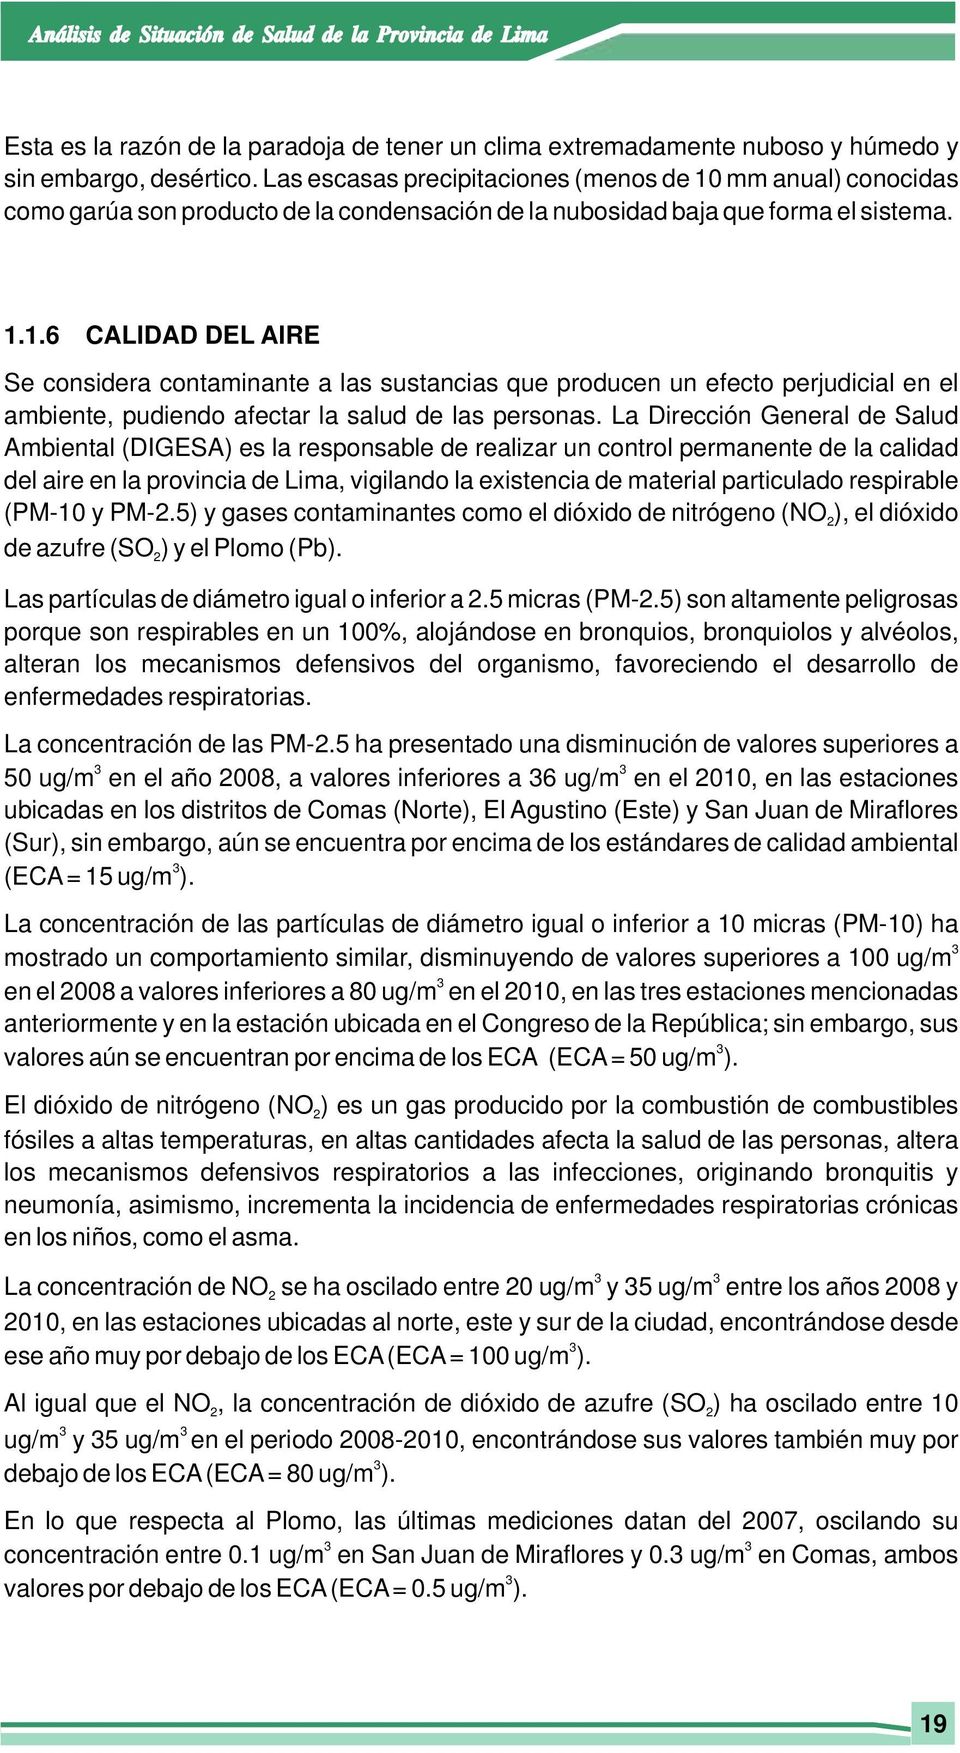 La Dirección General de Salud Ambiental (DIGESA) es la responsable de realizar un control permanente de la calidad del aire en la provincia de Lima, vigilando la existencia de material particulado